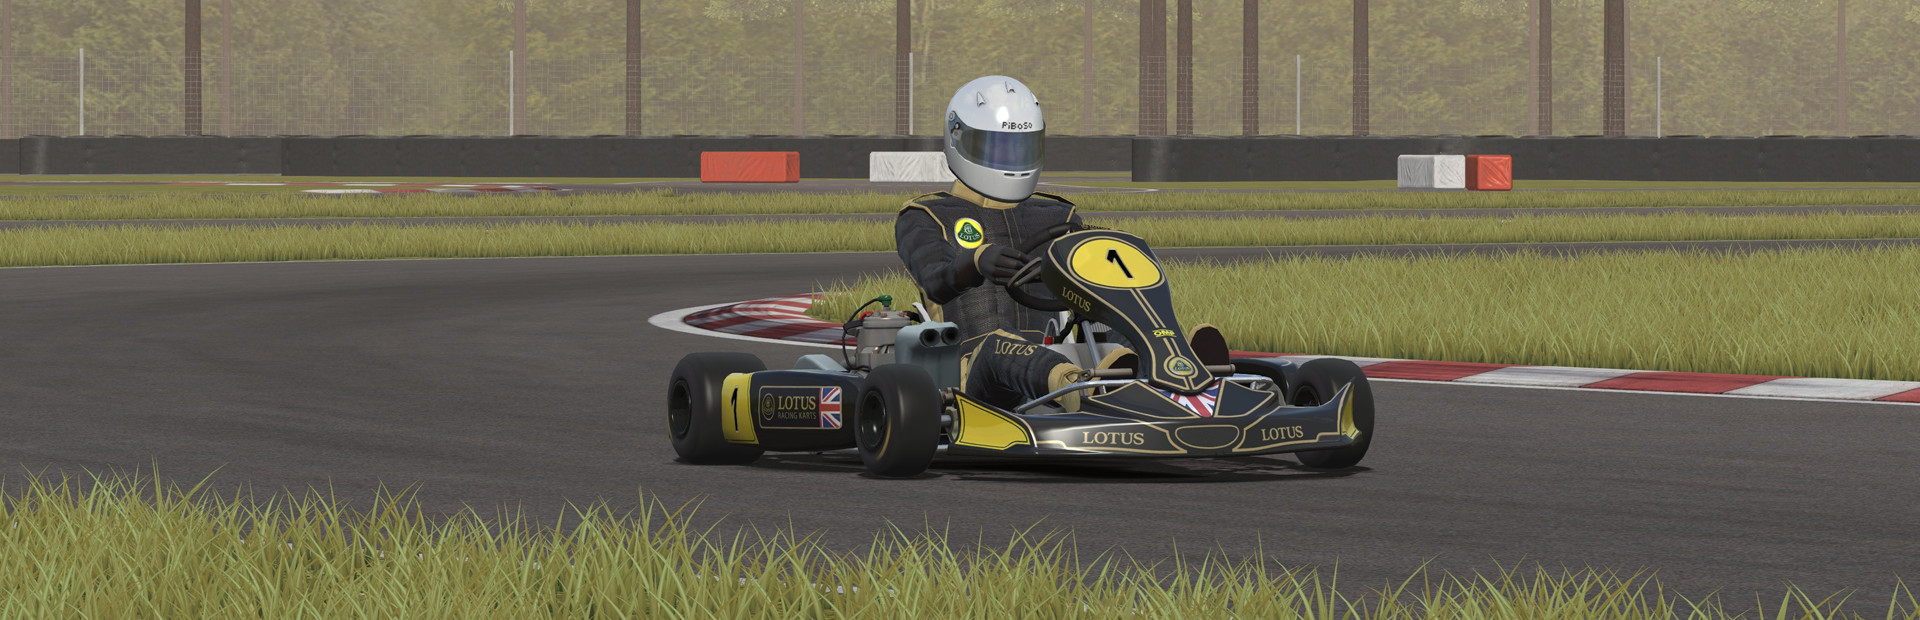 Kart racing steam фото 7